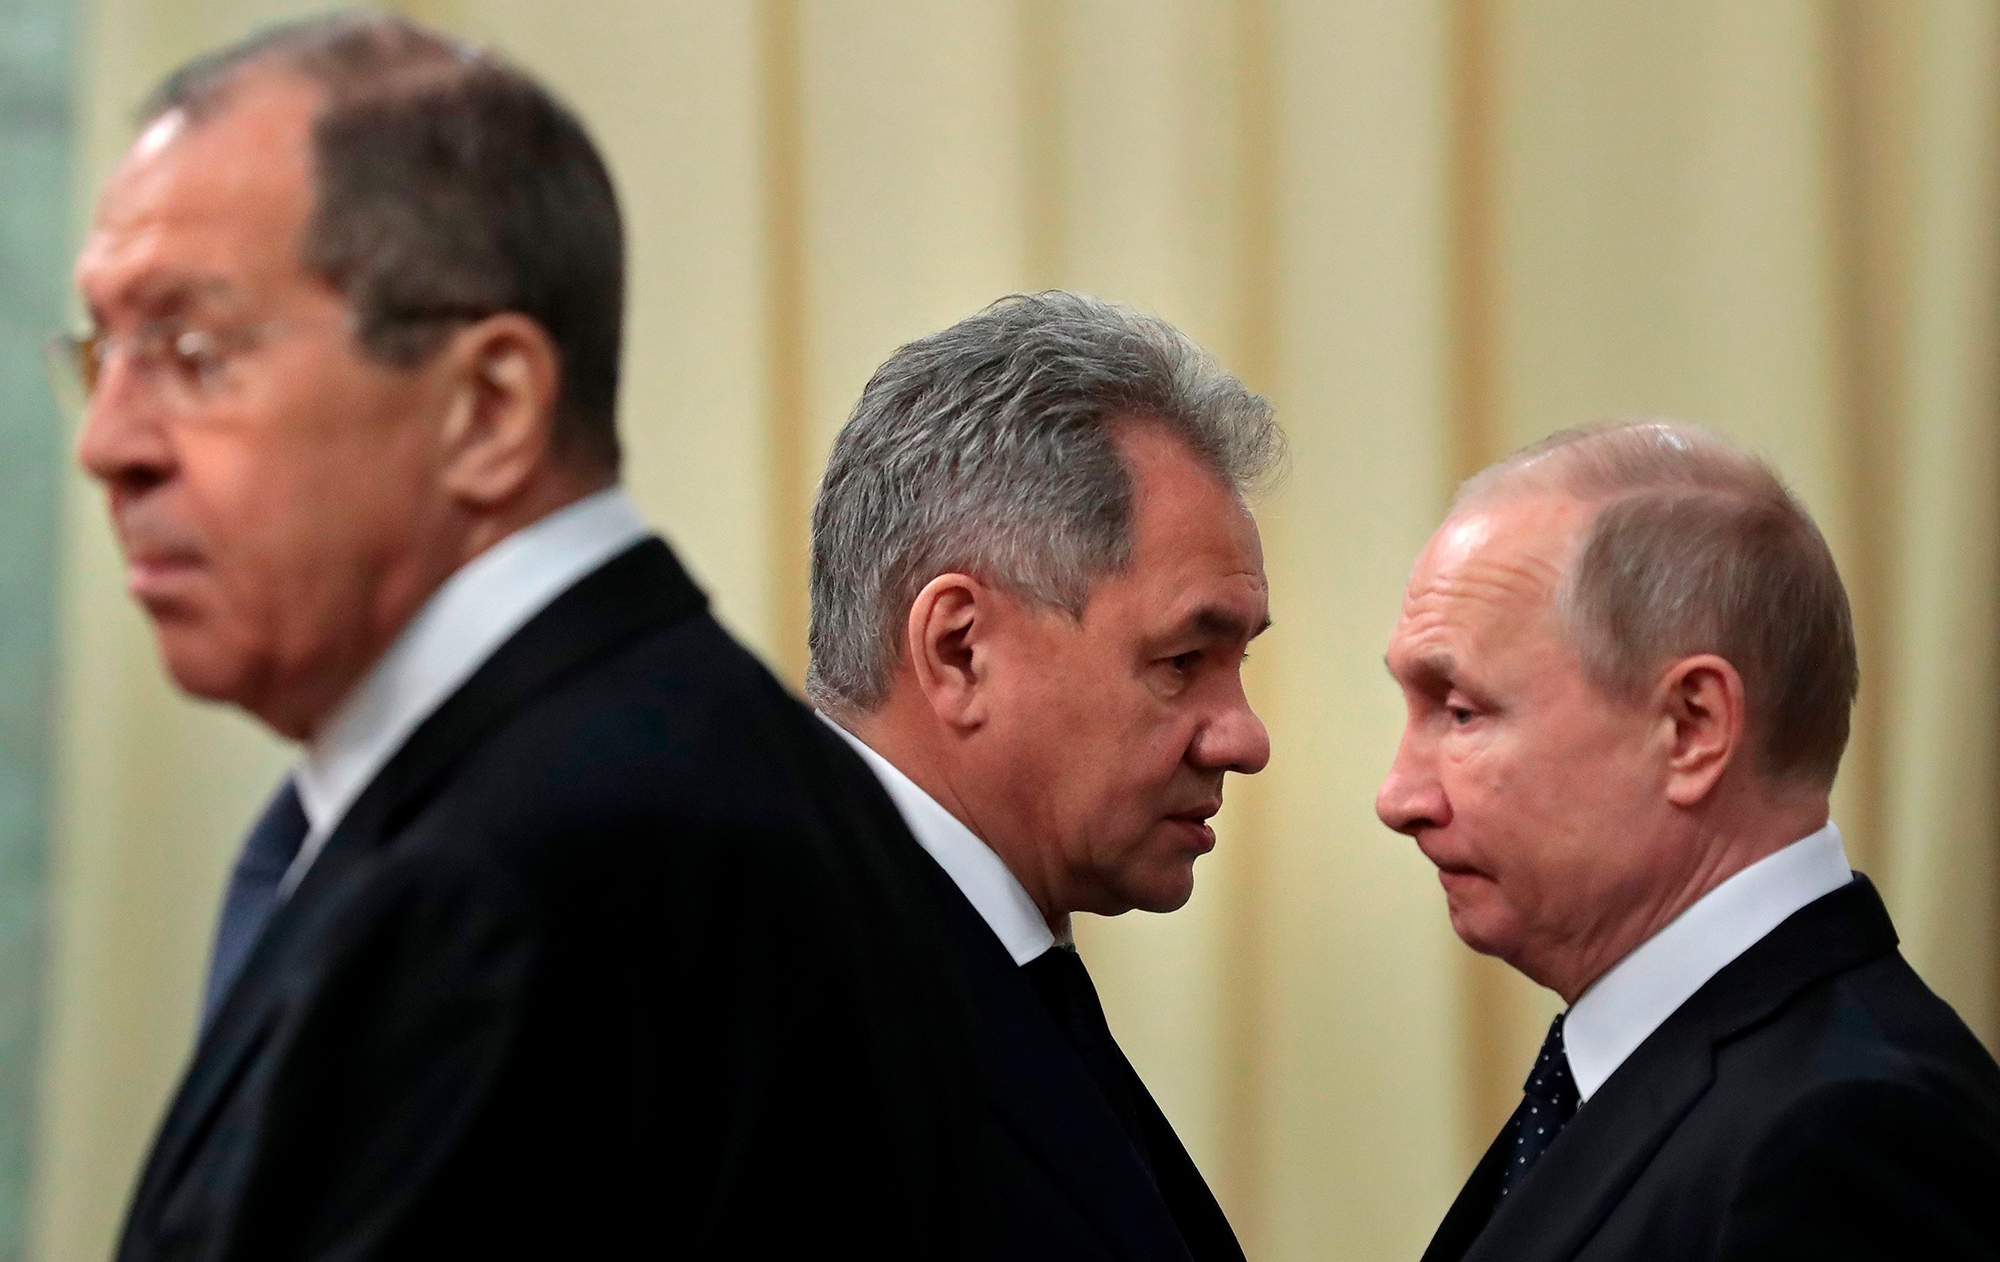 Суд для Путина. Как наказать диктатора за войну в Украине и начать трибунал по России